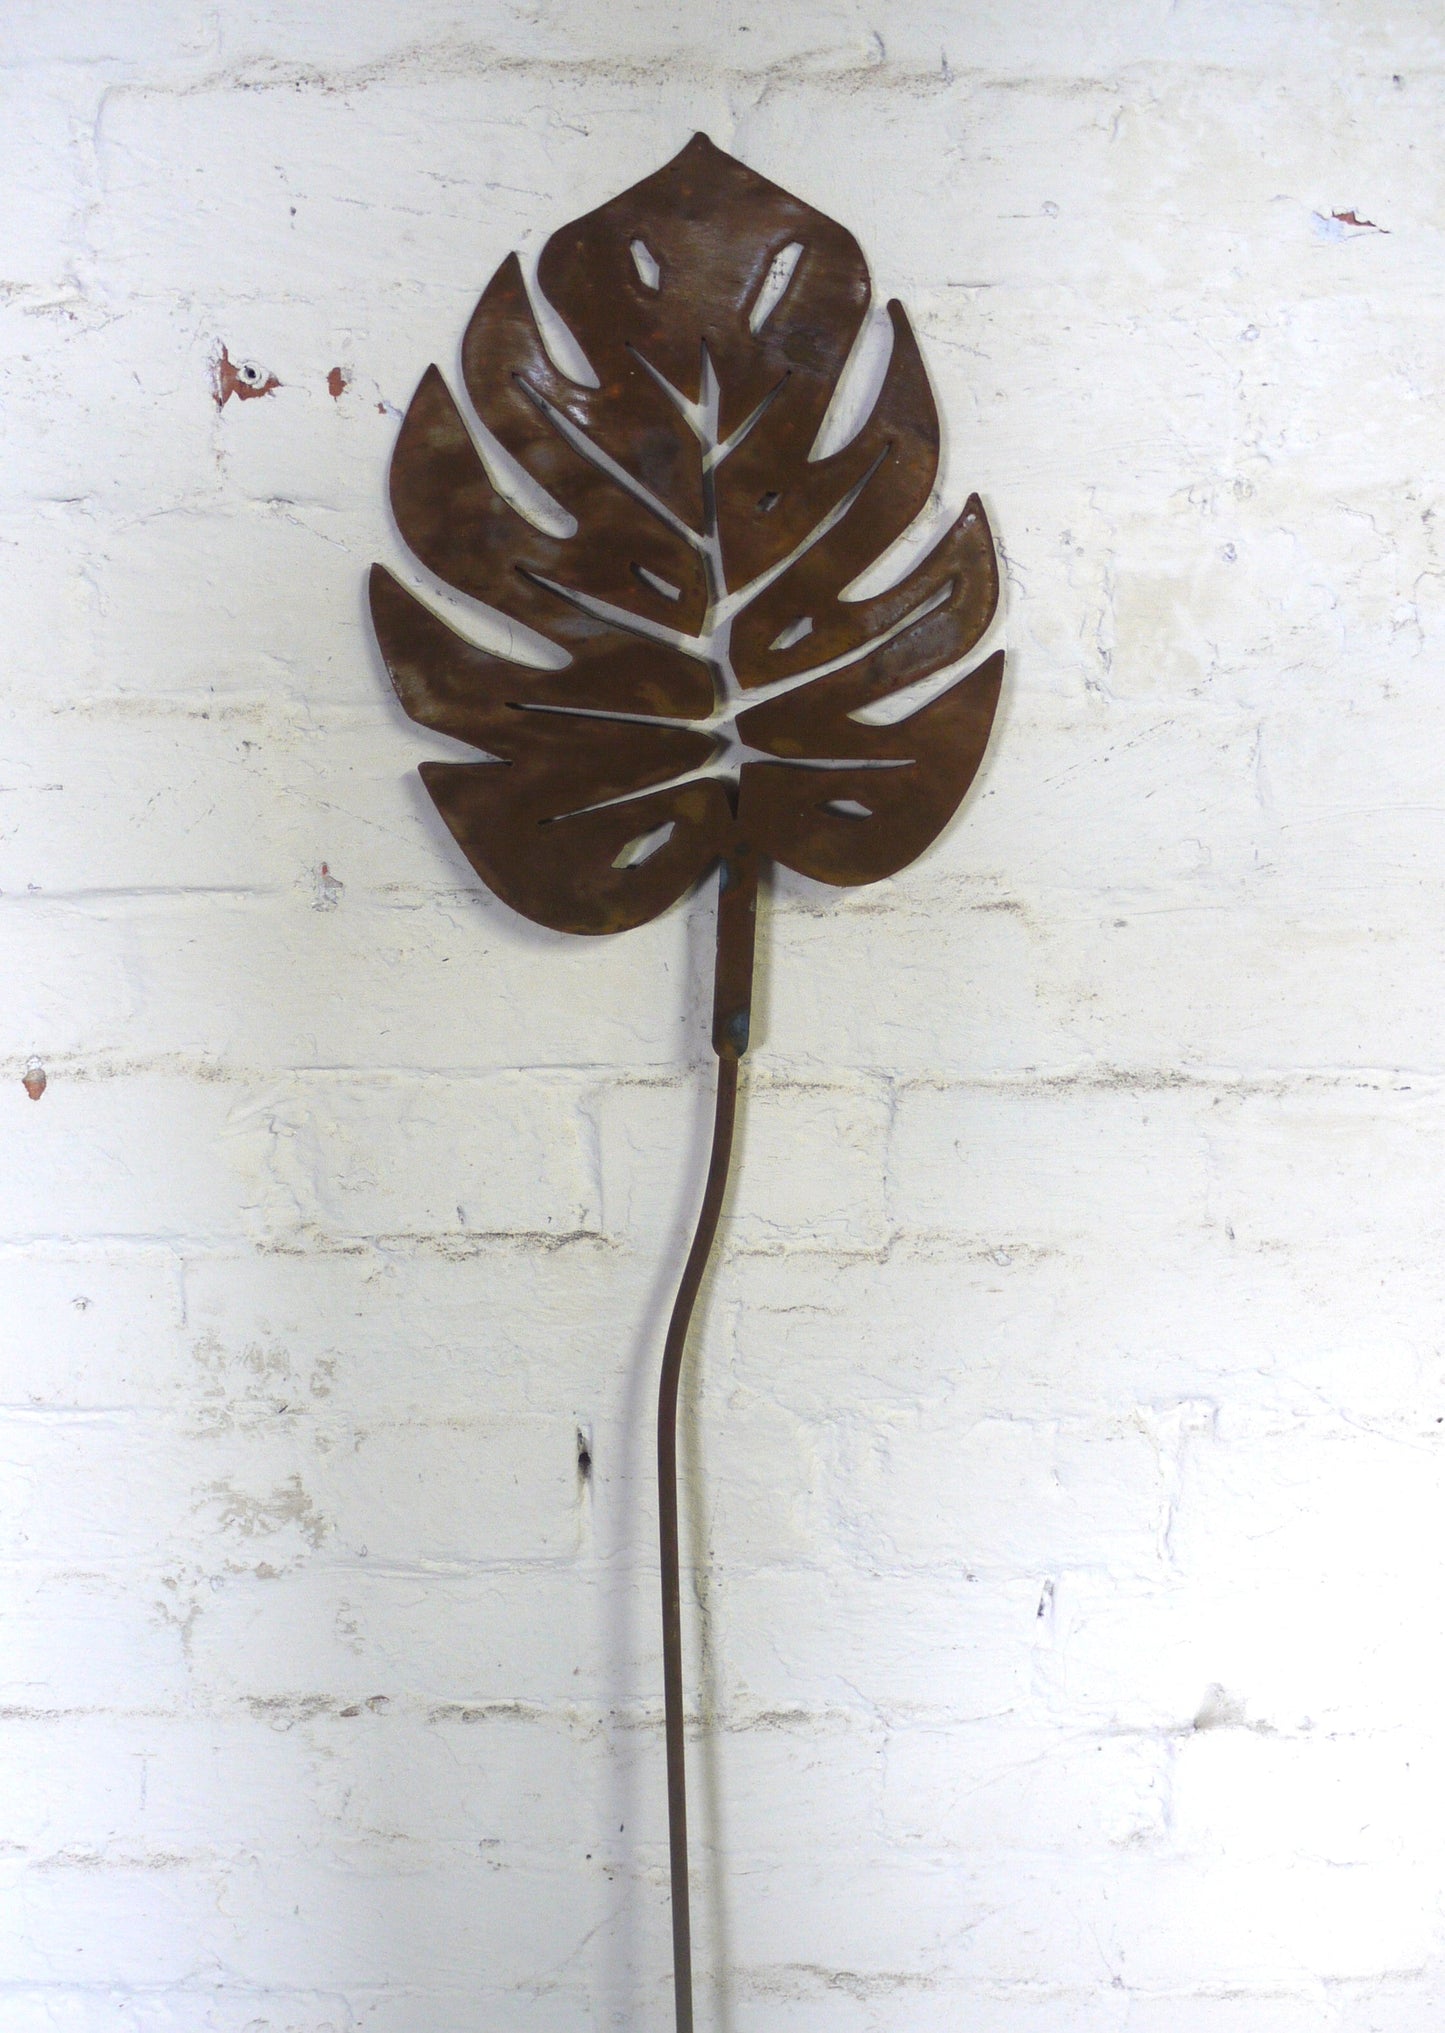 Monstera, Banana Leaf/Plant Garden Art, Plant Stake